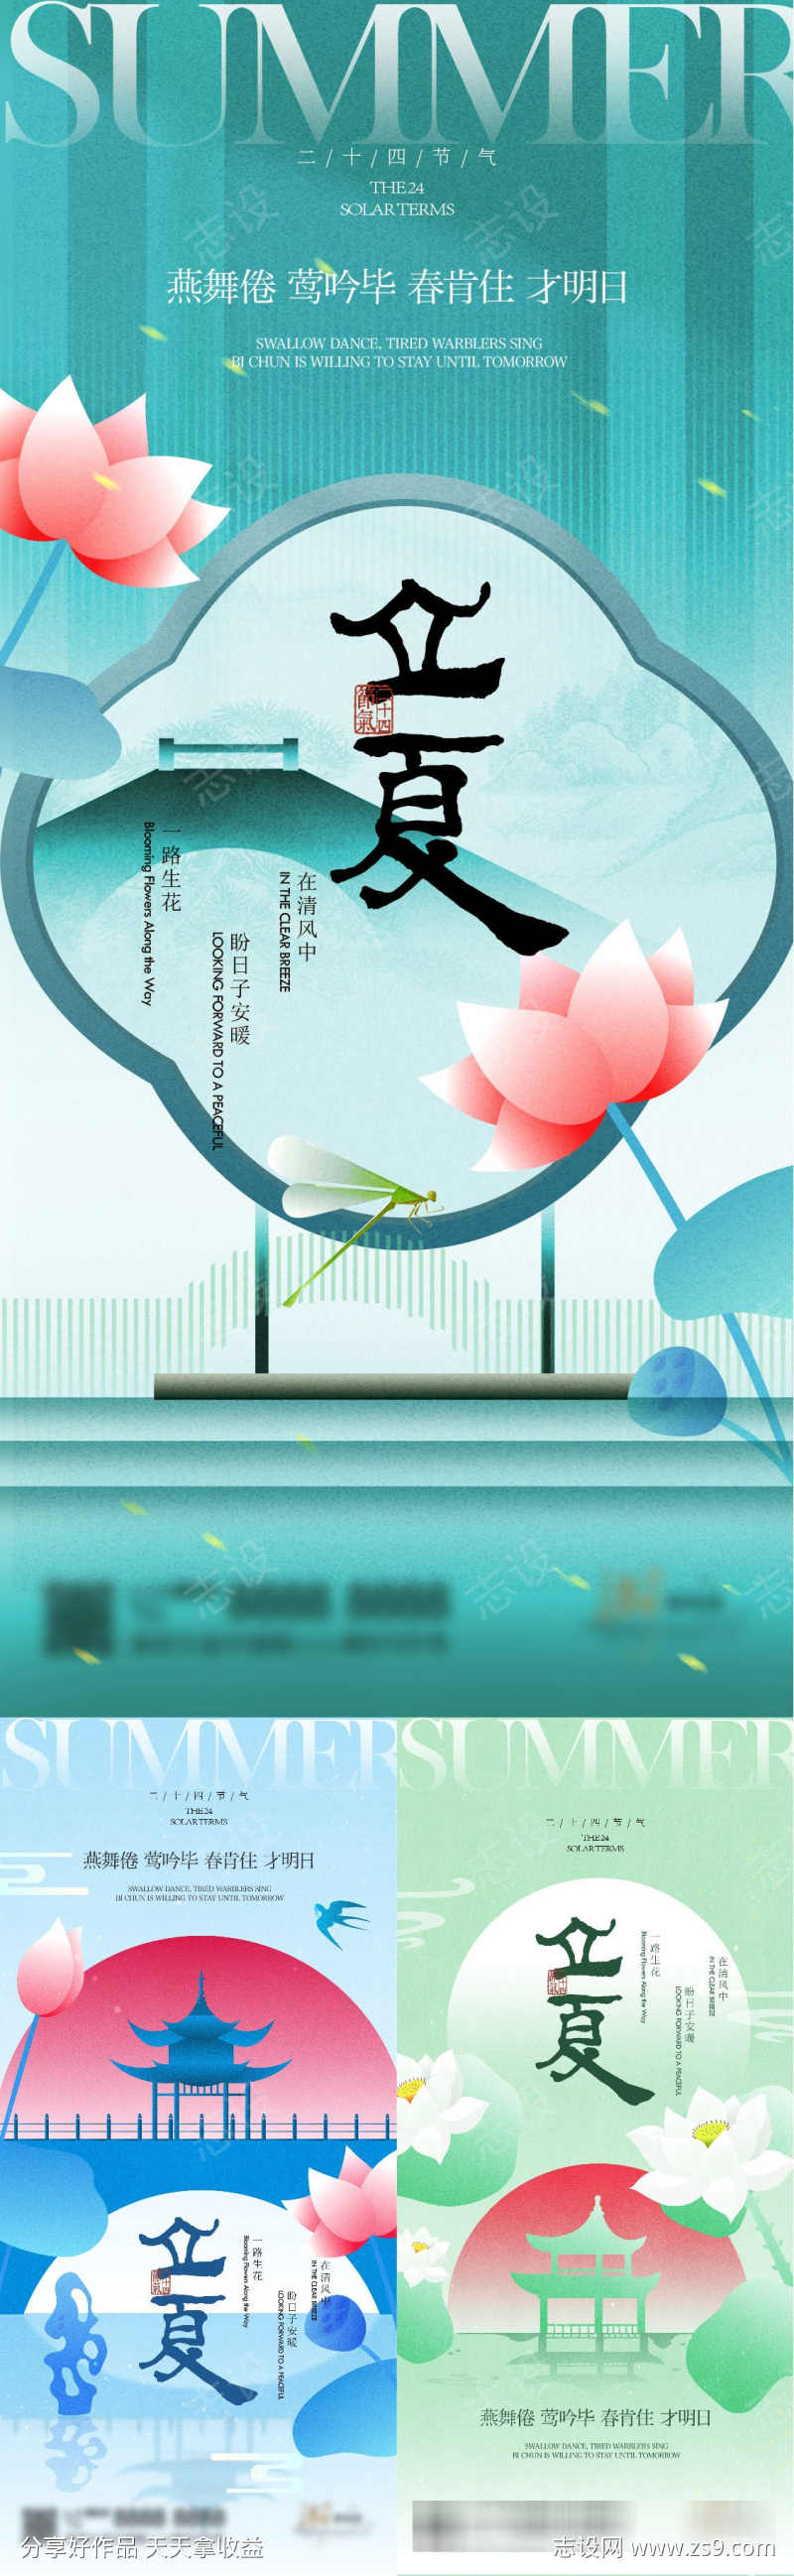 立夏节日节气系列海报